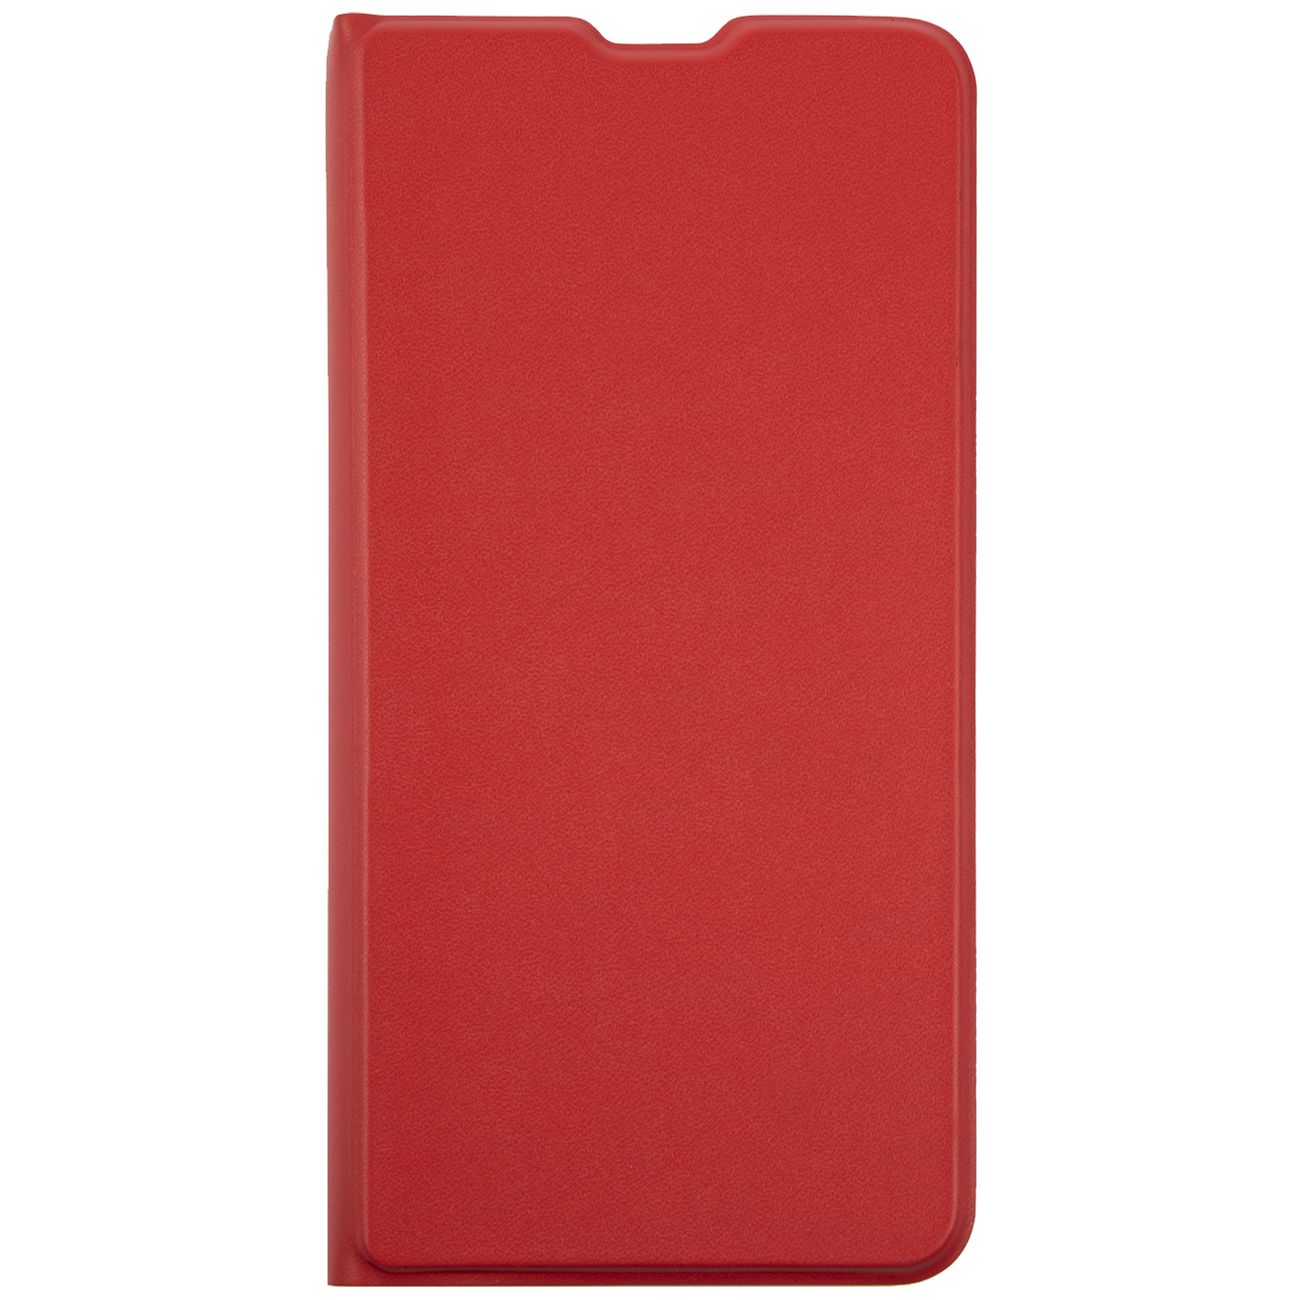   E2E4 Чехол-книжка Red Line для смартфона Samsung Galaxy A22 4G, искусственная кожа/полиуретан, красный (УТ000026318)